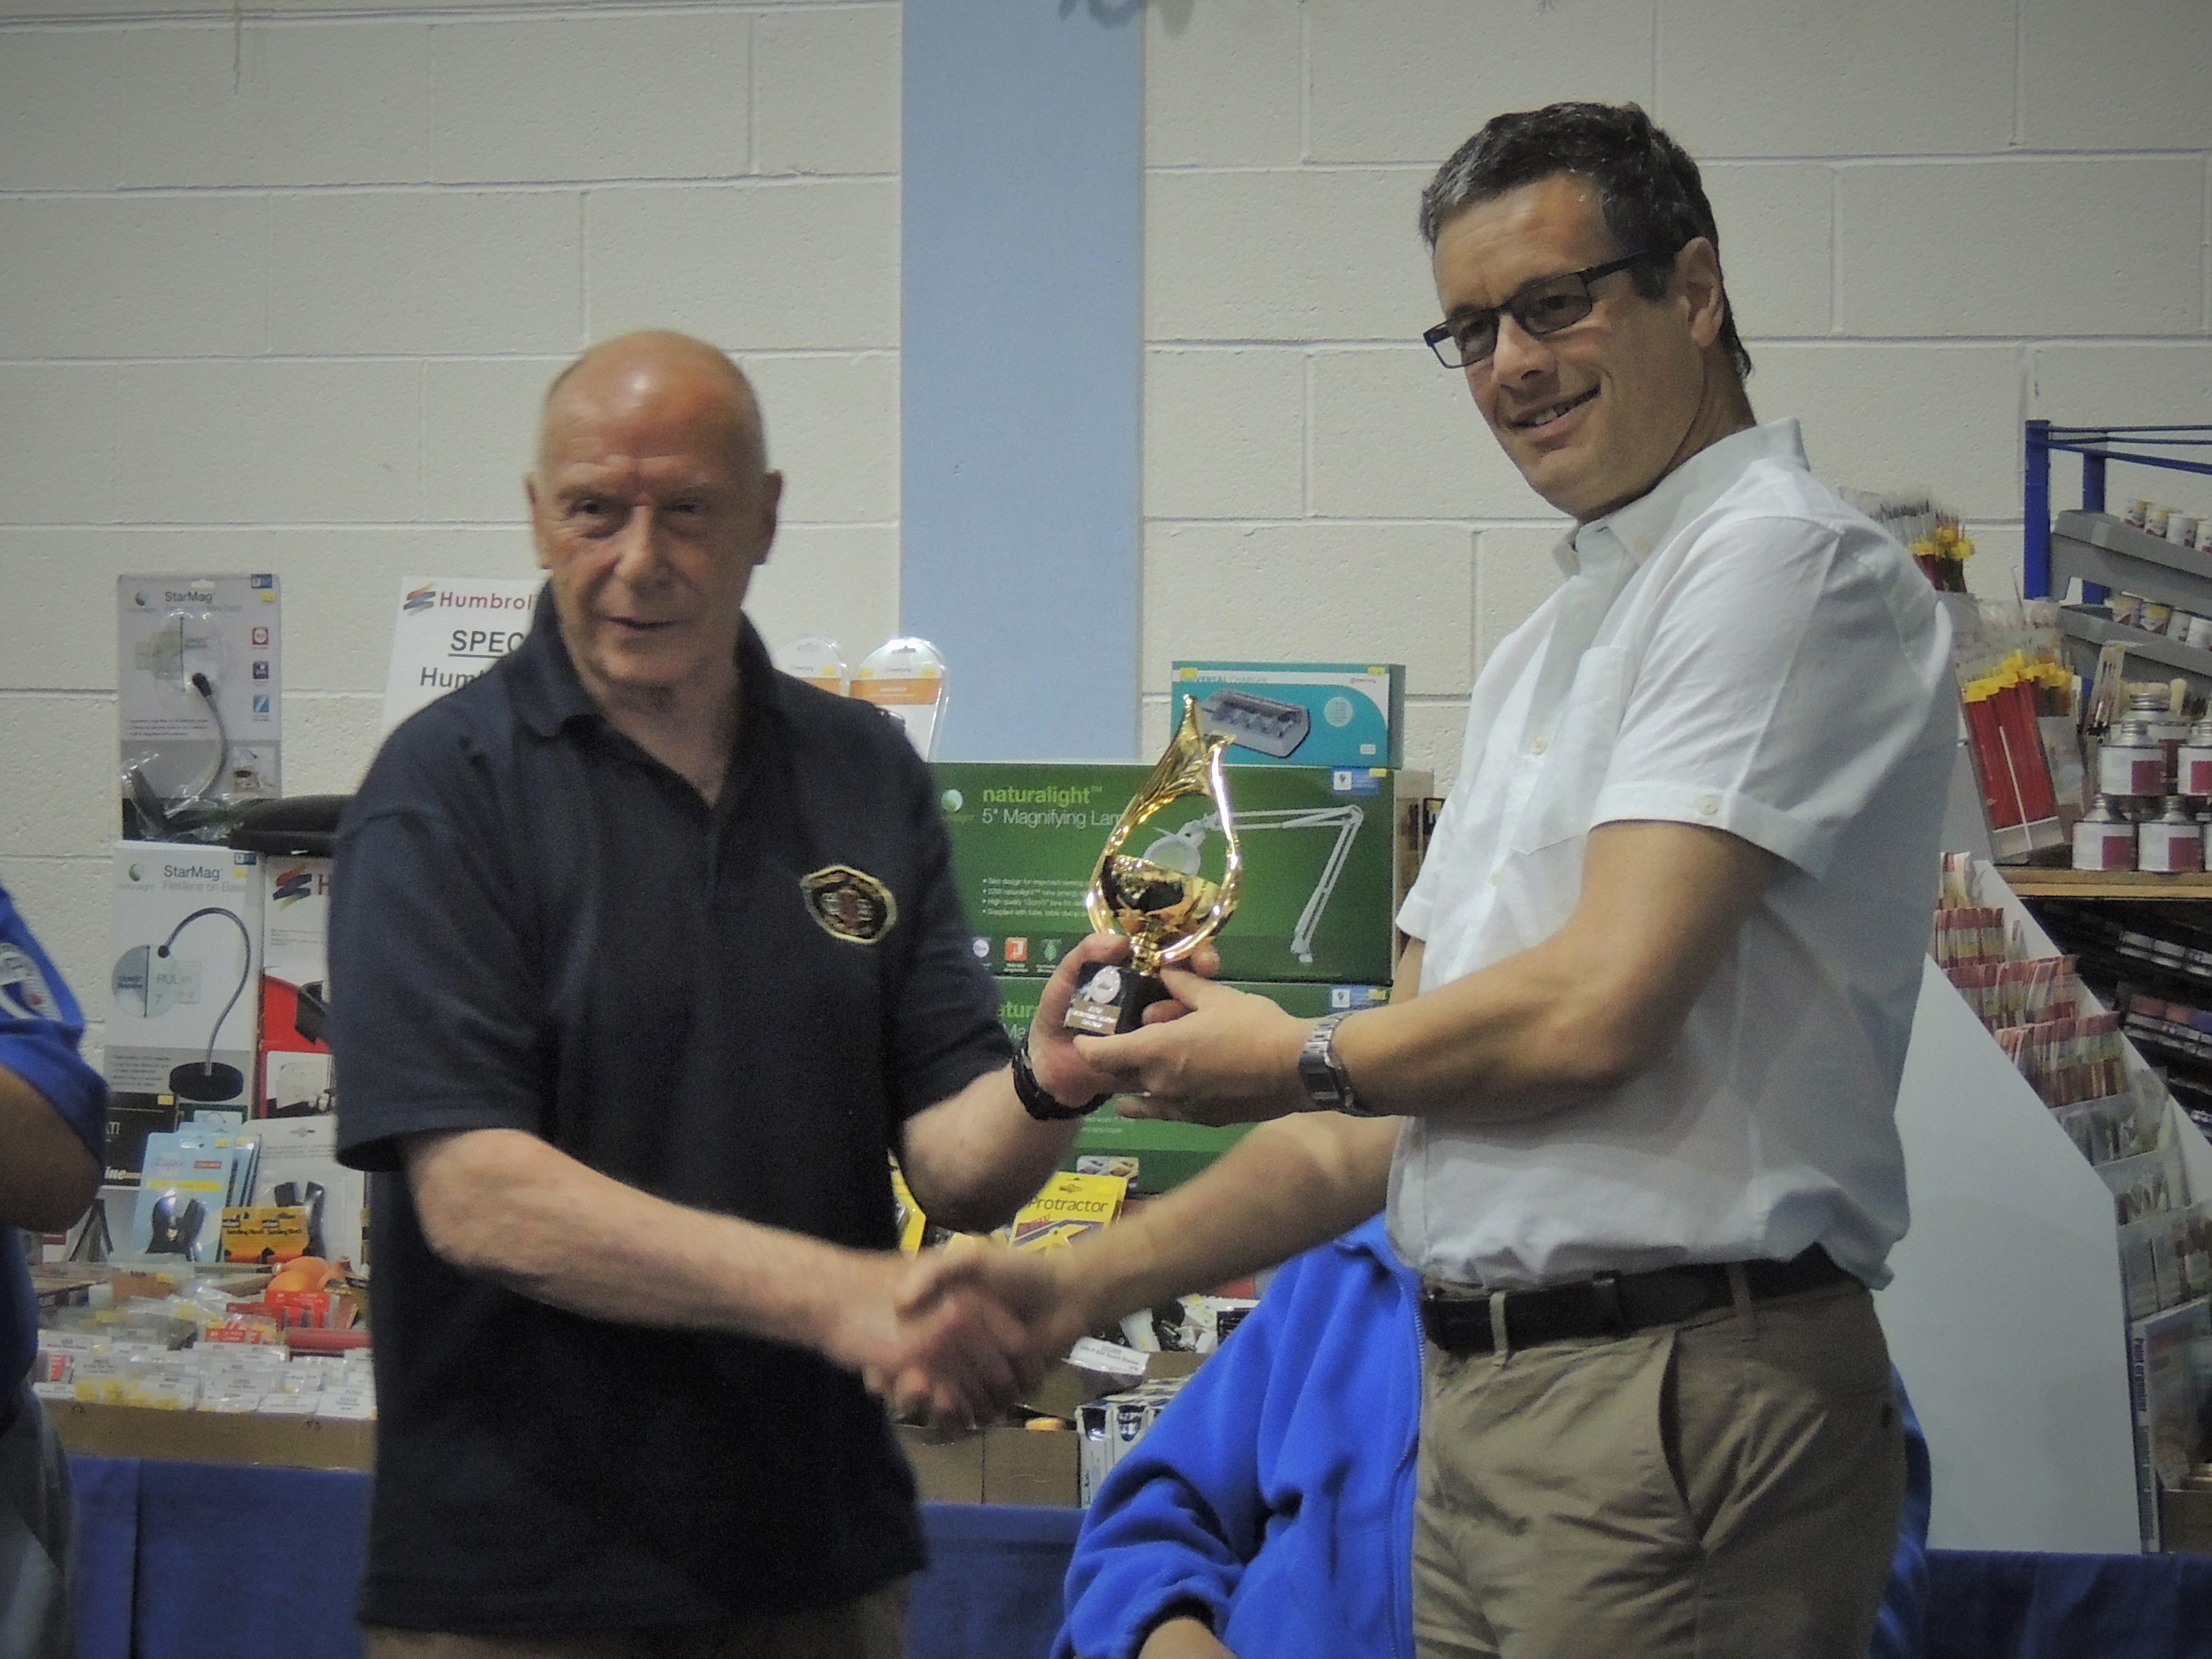 Alan Wilkinson receiving his trophy